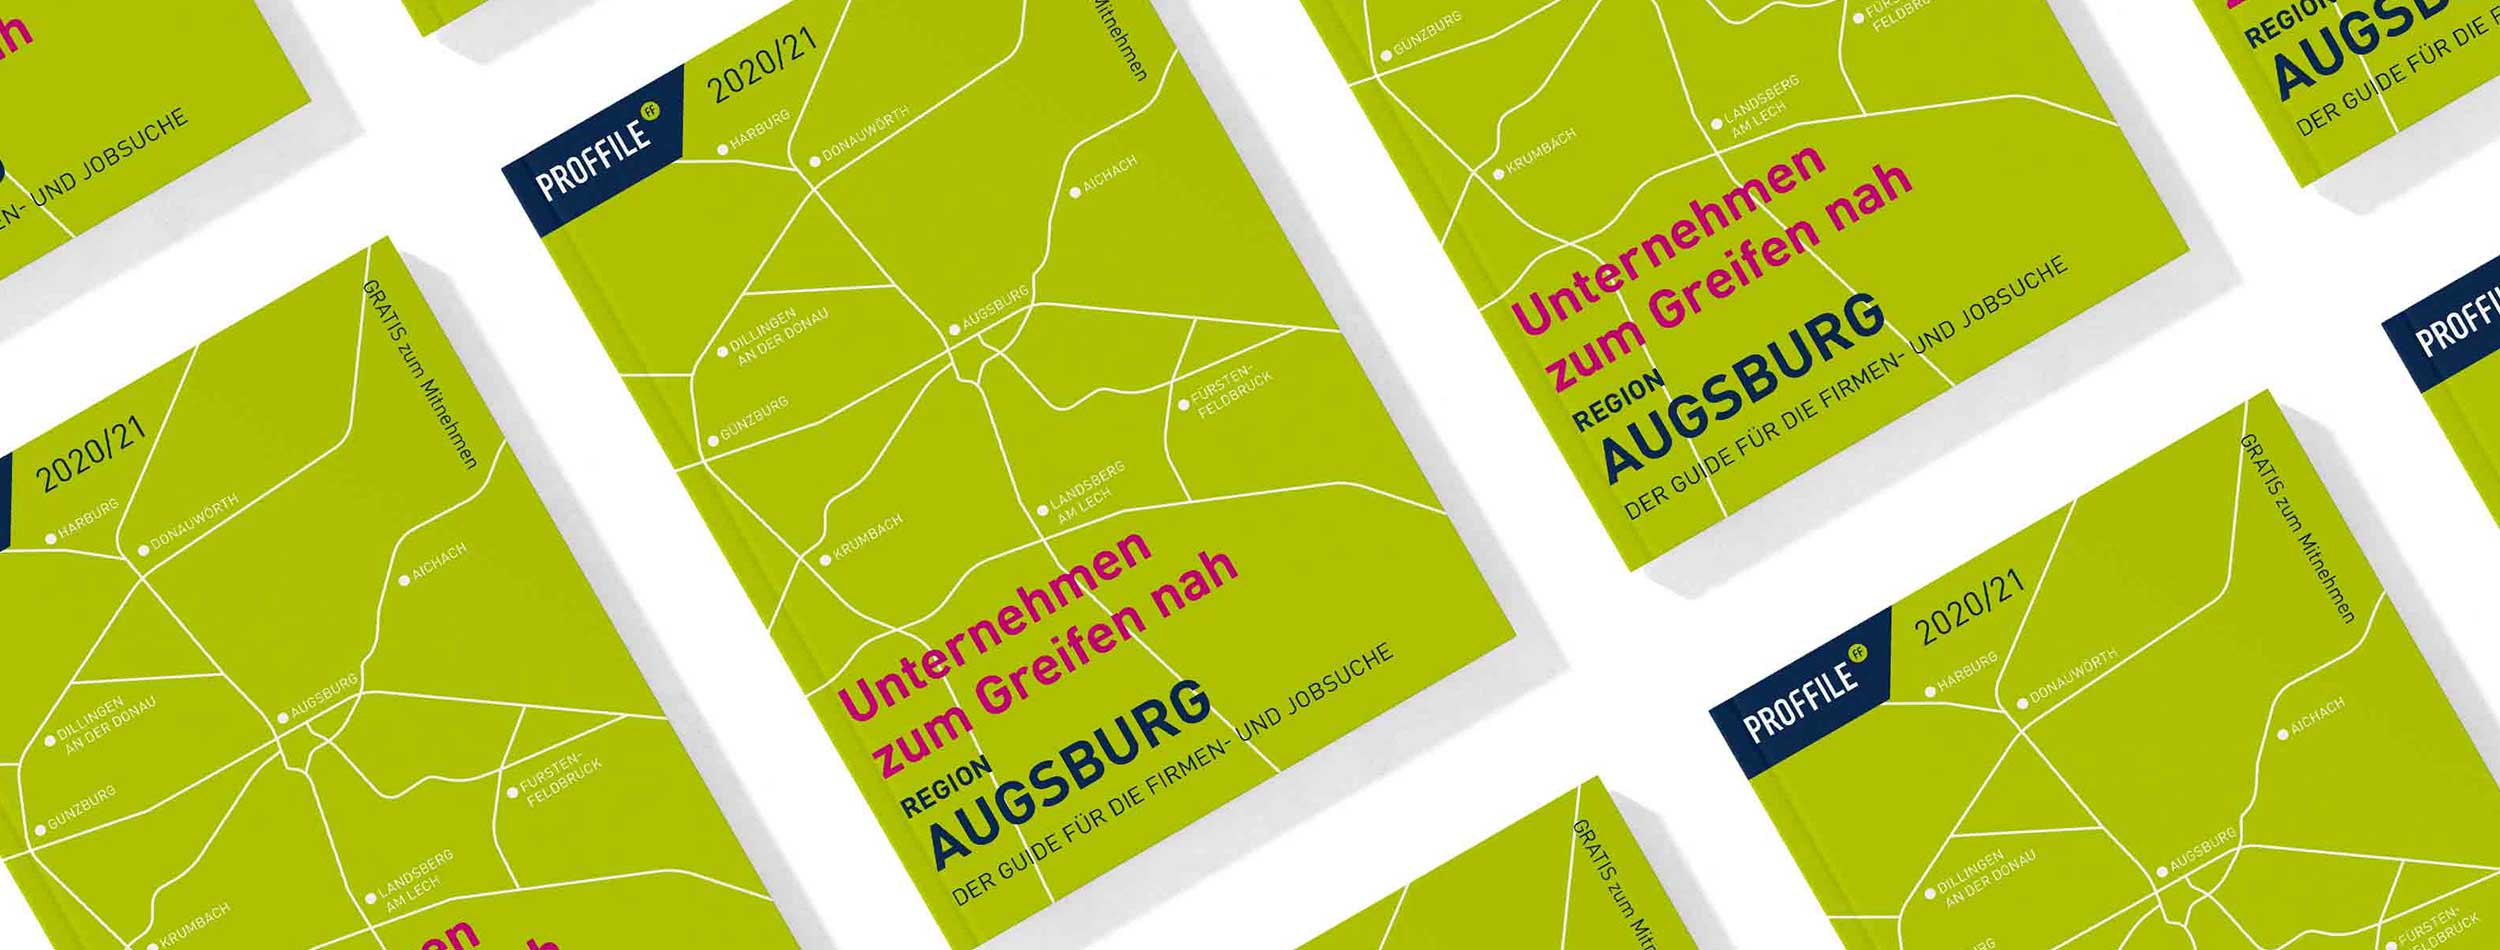 PROFFILE Firmenguide 2020 für Region Augsburg